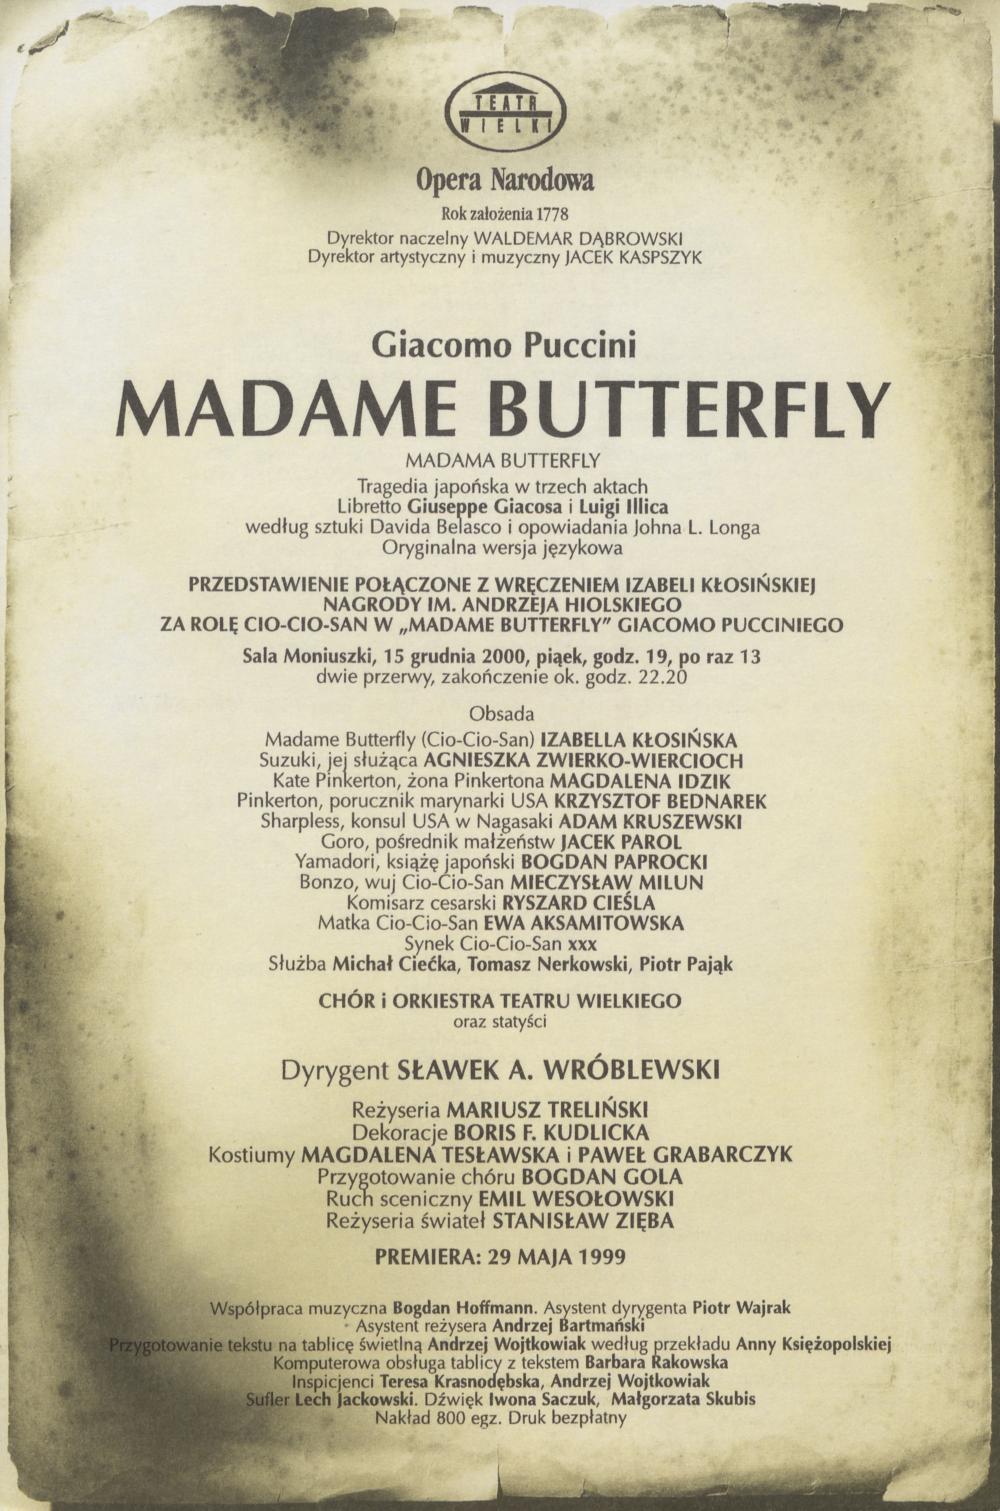 Wkładka obsadowa Przedstawienie połączone z wręczeniem Izabelli Kłosińskiej nagordy im. Andrzej Hiolskiego za rolę Co-Cio-San. „Madame Butterfly” Giacomo Puccini 15-12-2000